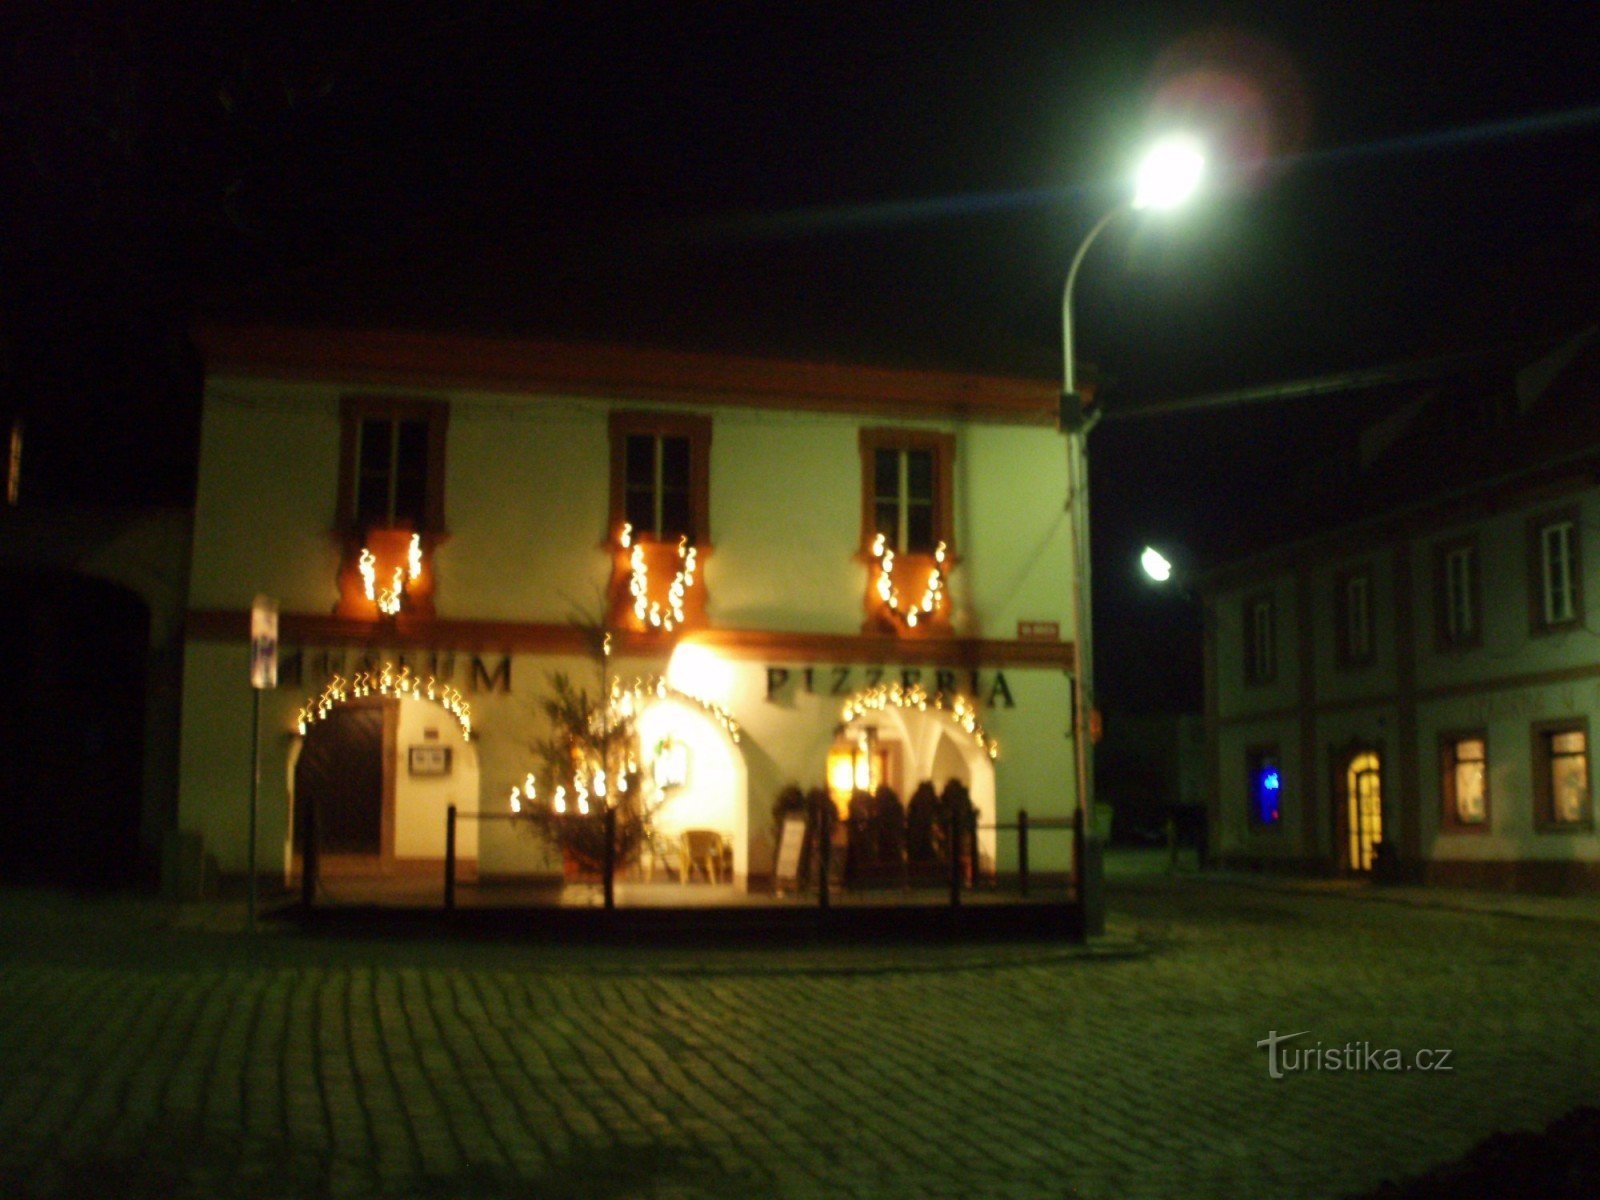 Musée de la poterie illuminé de Noël avec pizzeria